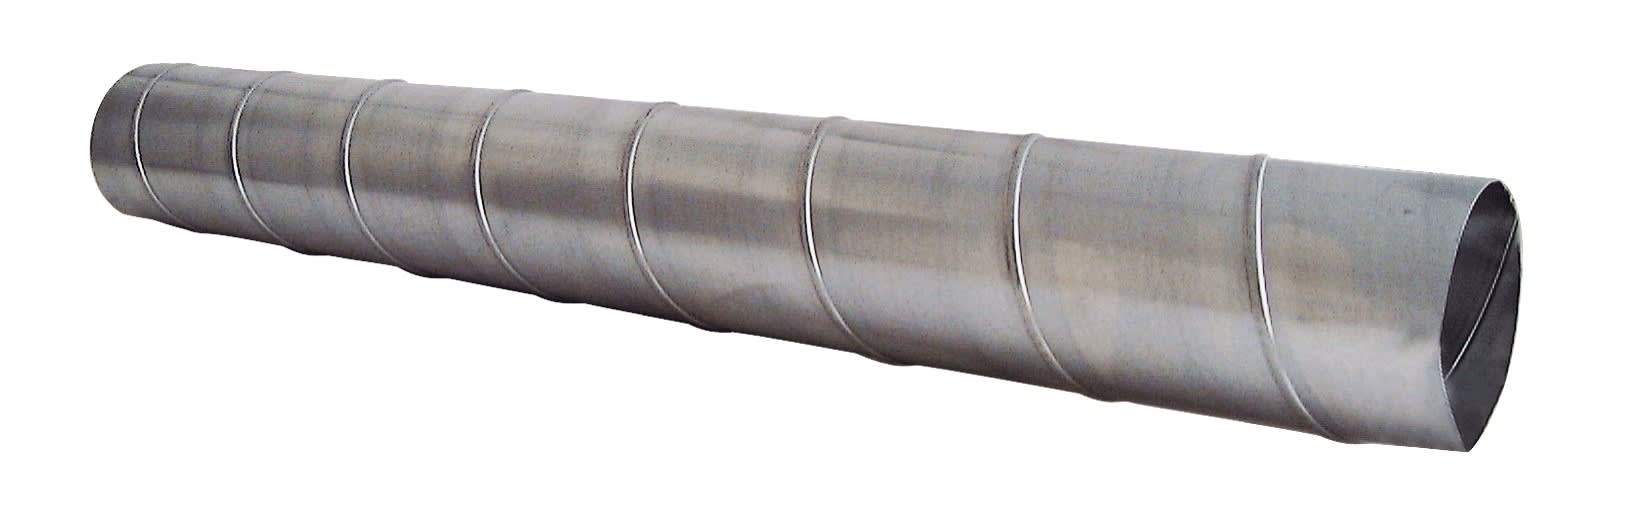 S&P - Conduit spiralé acier galvanisé, D 125 mm, longueur 2,47 m